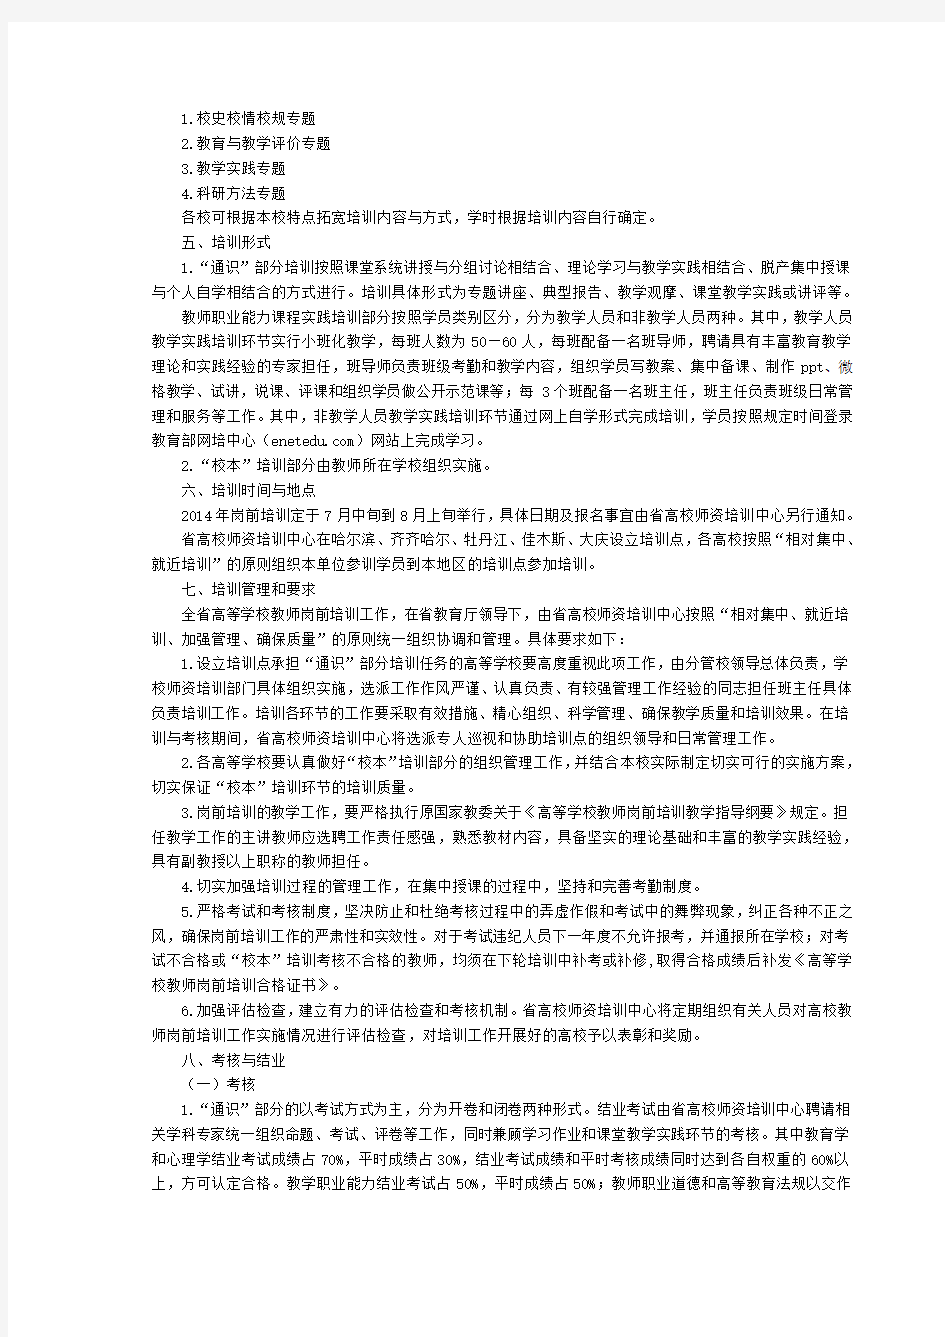 2014年黑龙江省高等学校教师岗前培训工作实施方案